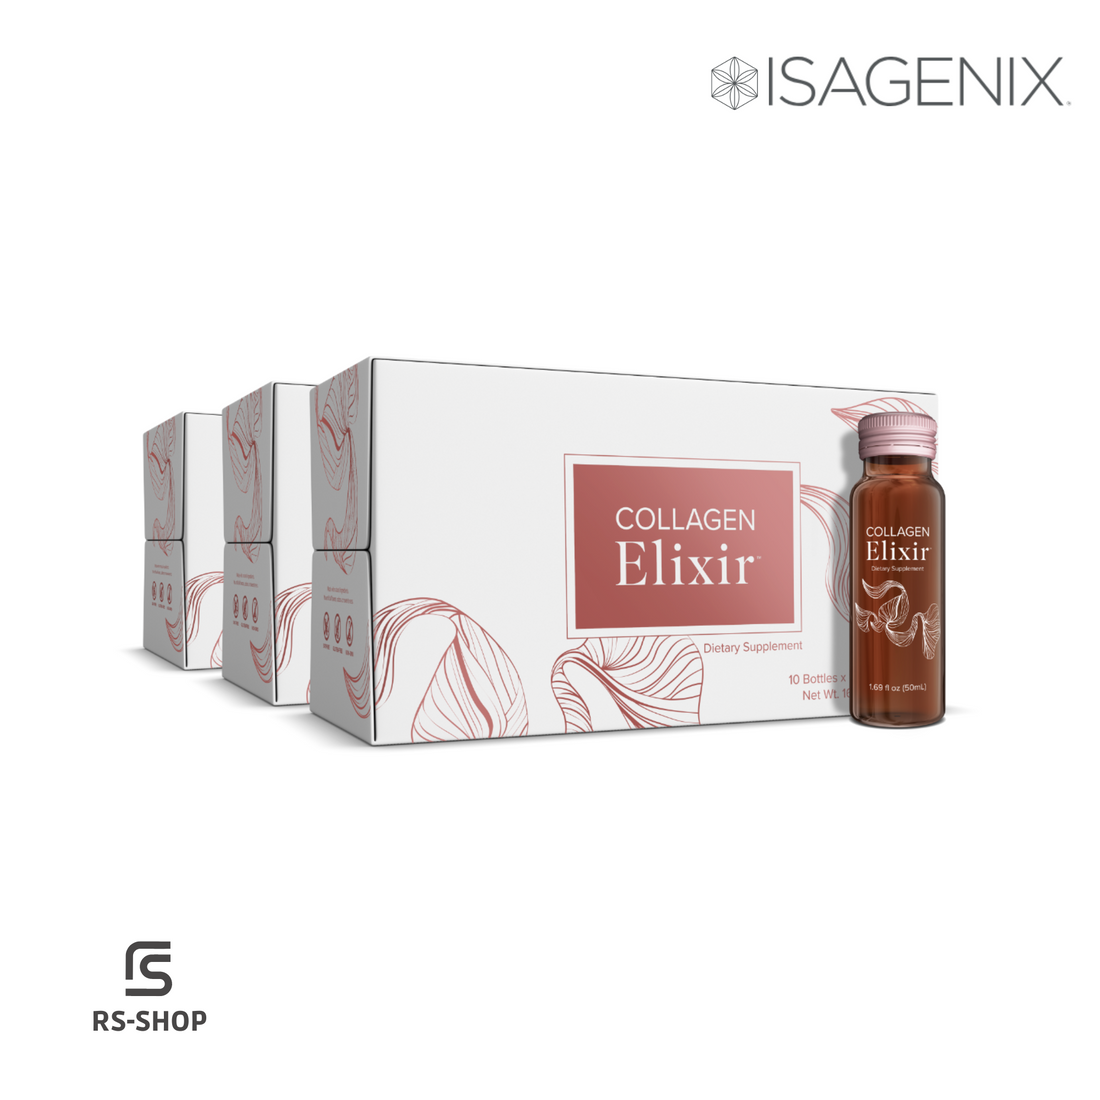 ISAGENIX - Collagen Elixir - 40 bottles